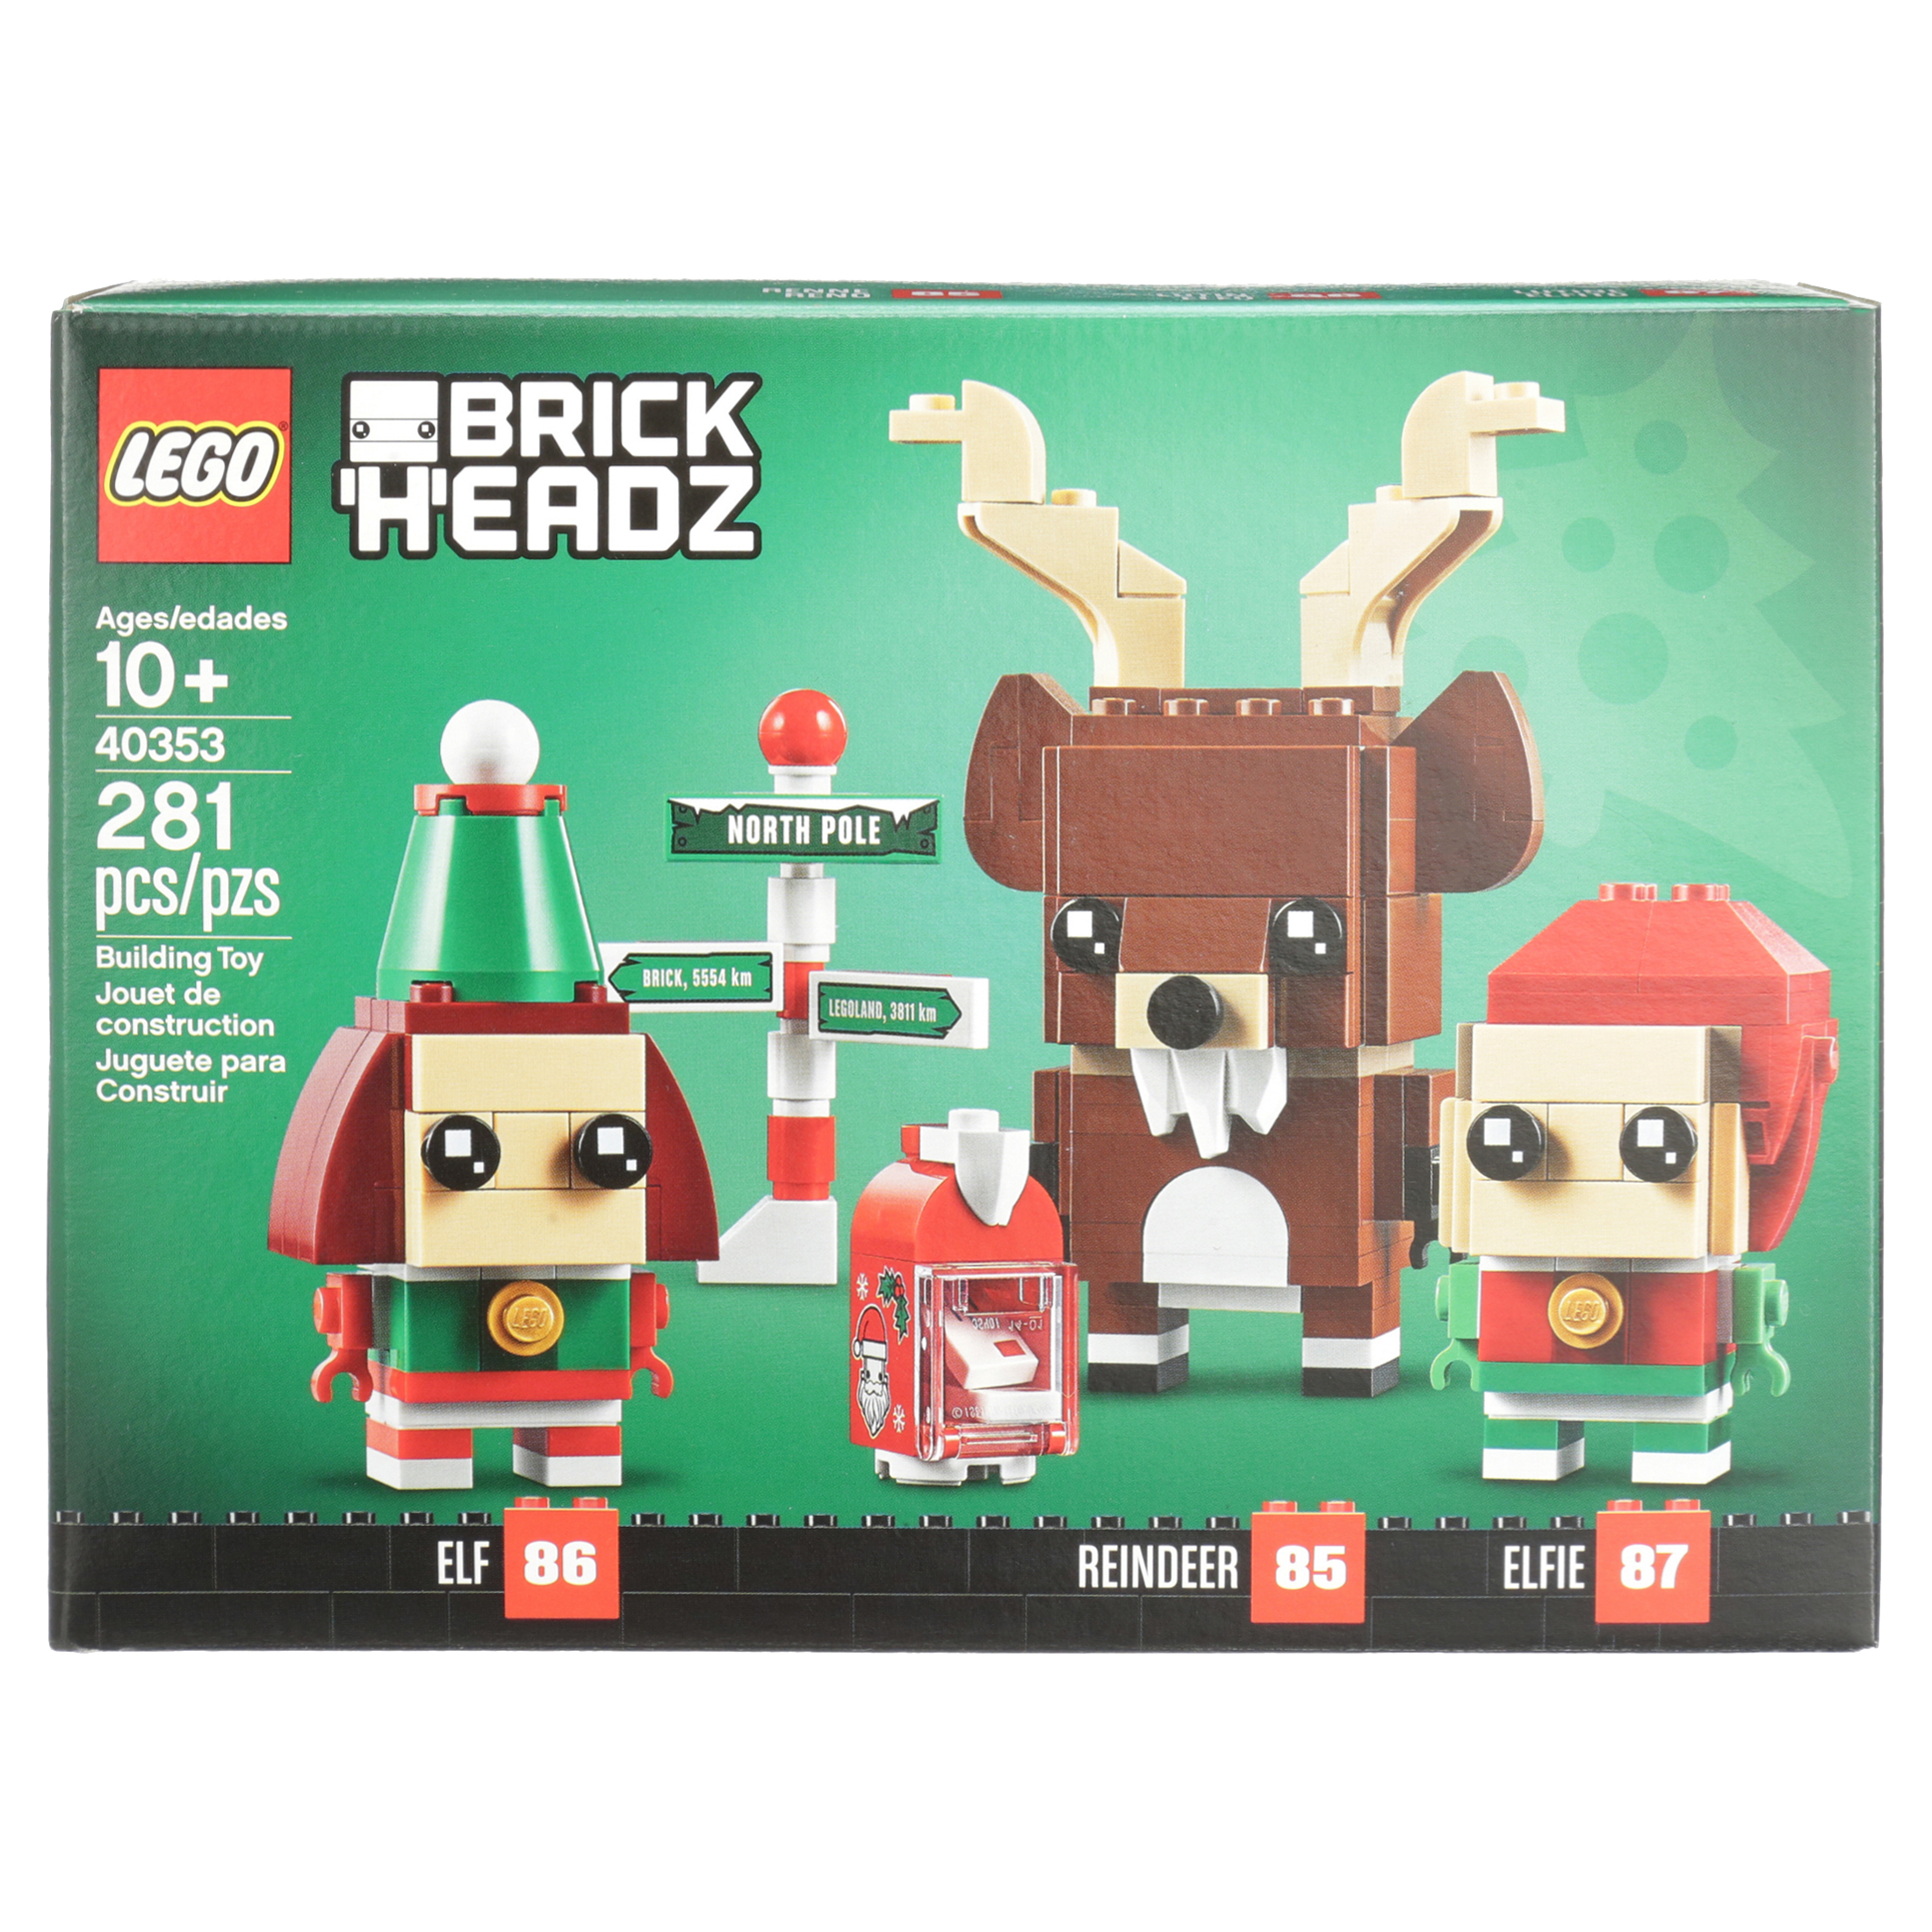 LEGO Brickheadz Reindeer, Elf and Elfie 40353 Building Toy (281 Pieces) - image 5 of 10